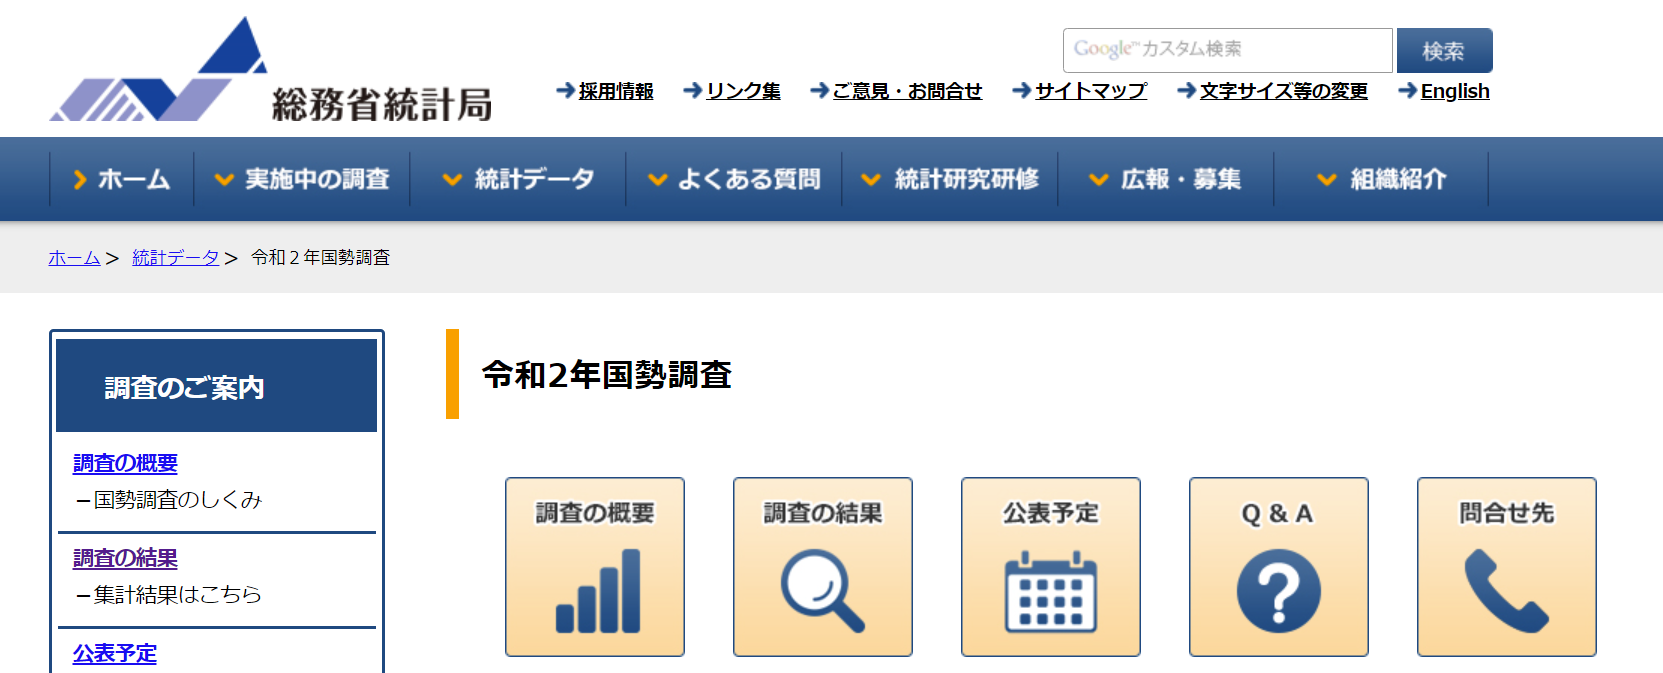 総務省統計局ホームページのスクリーンショット画像